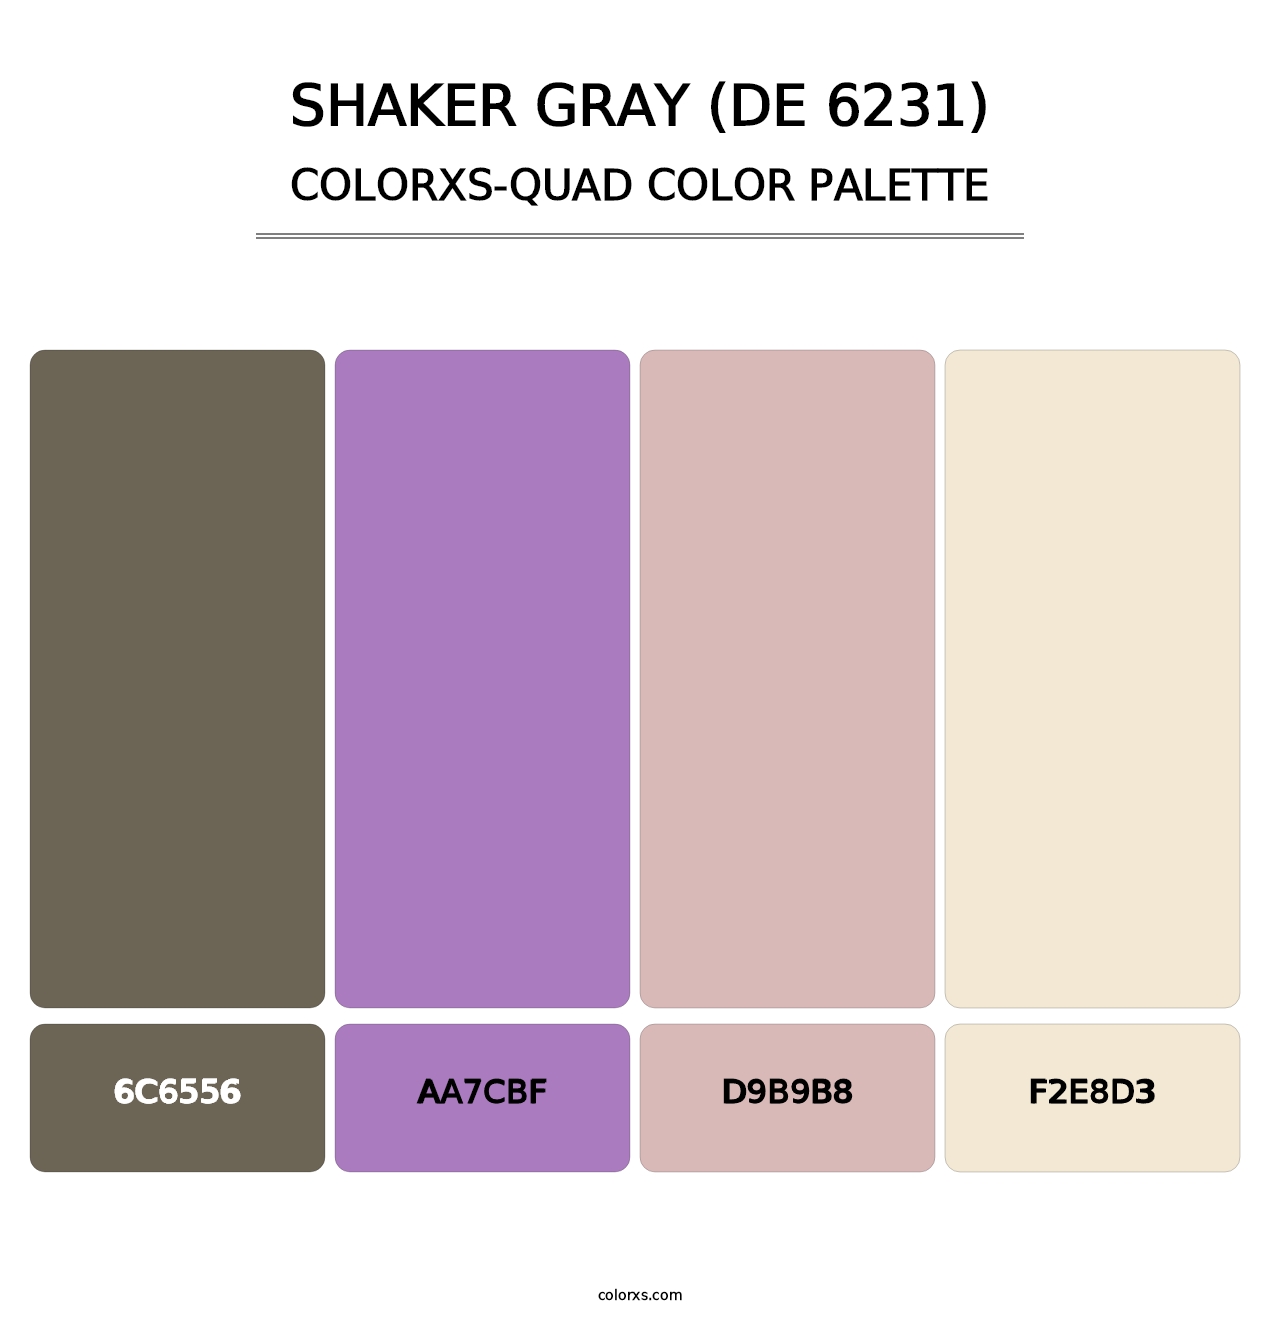 Shaker Gray (DE 6231) - Colorxs Quad Palette